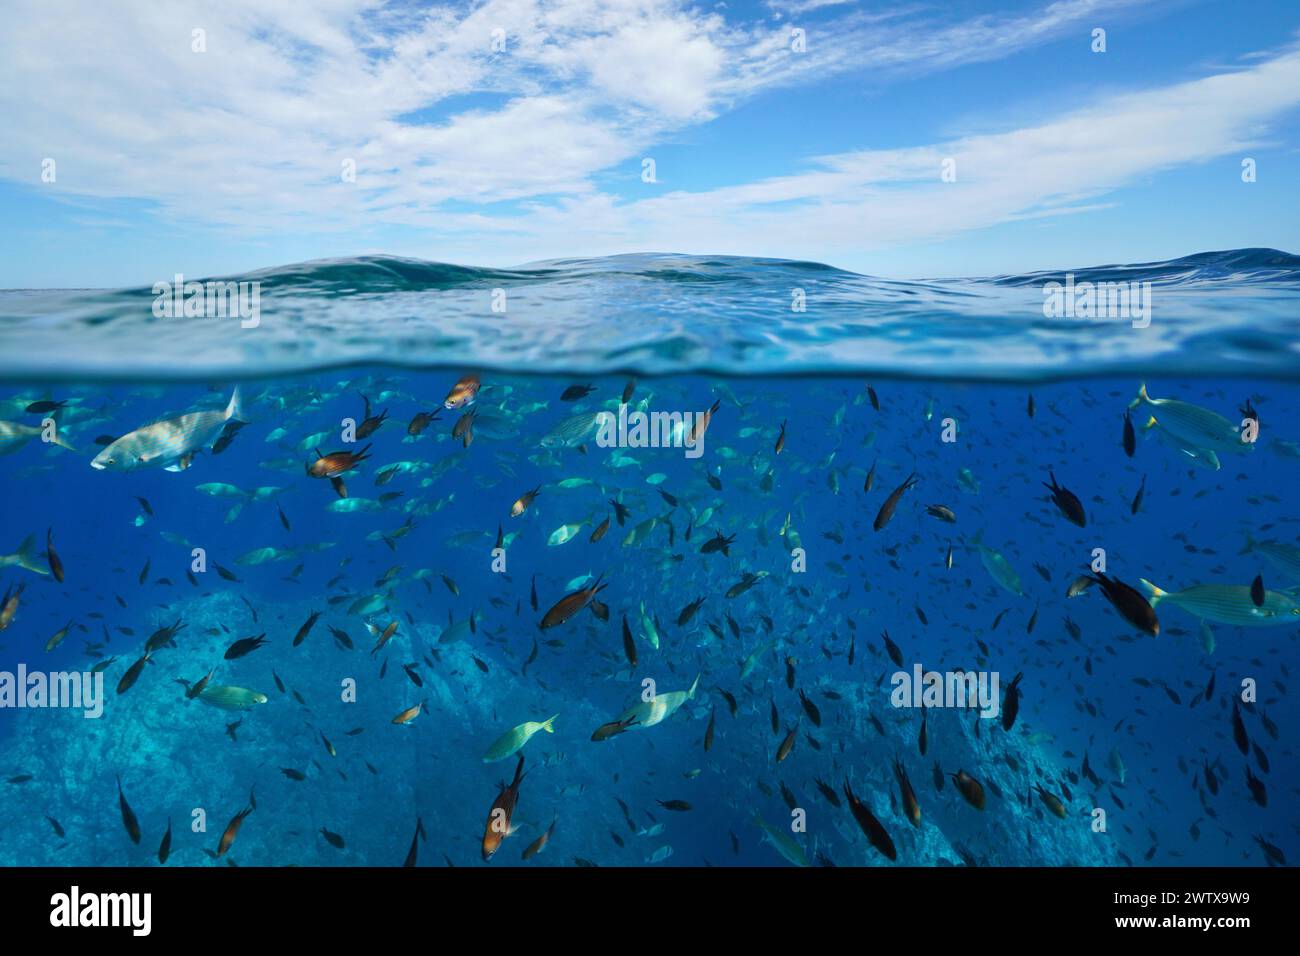 Banc de poissons sous l'eau dans la mer Méditerranée et ciel bleu avec nuages, vue divisée sur et sous la surface de l'eau, scène naturelle, France Banque D'Images